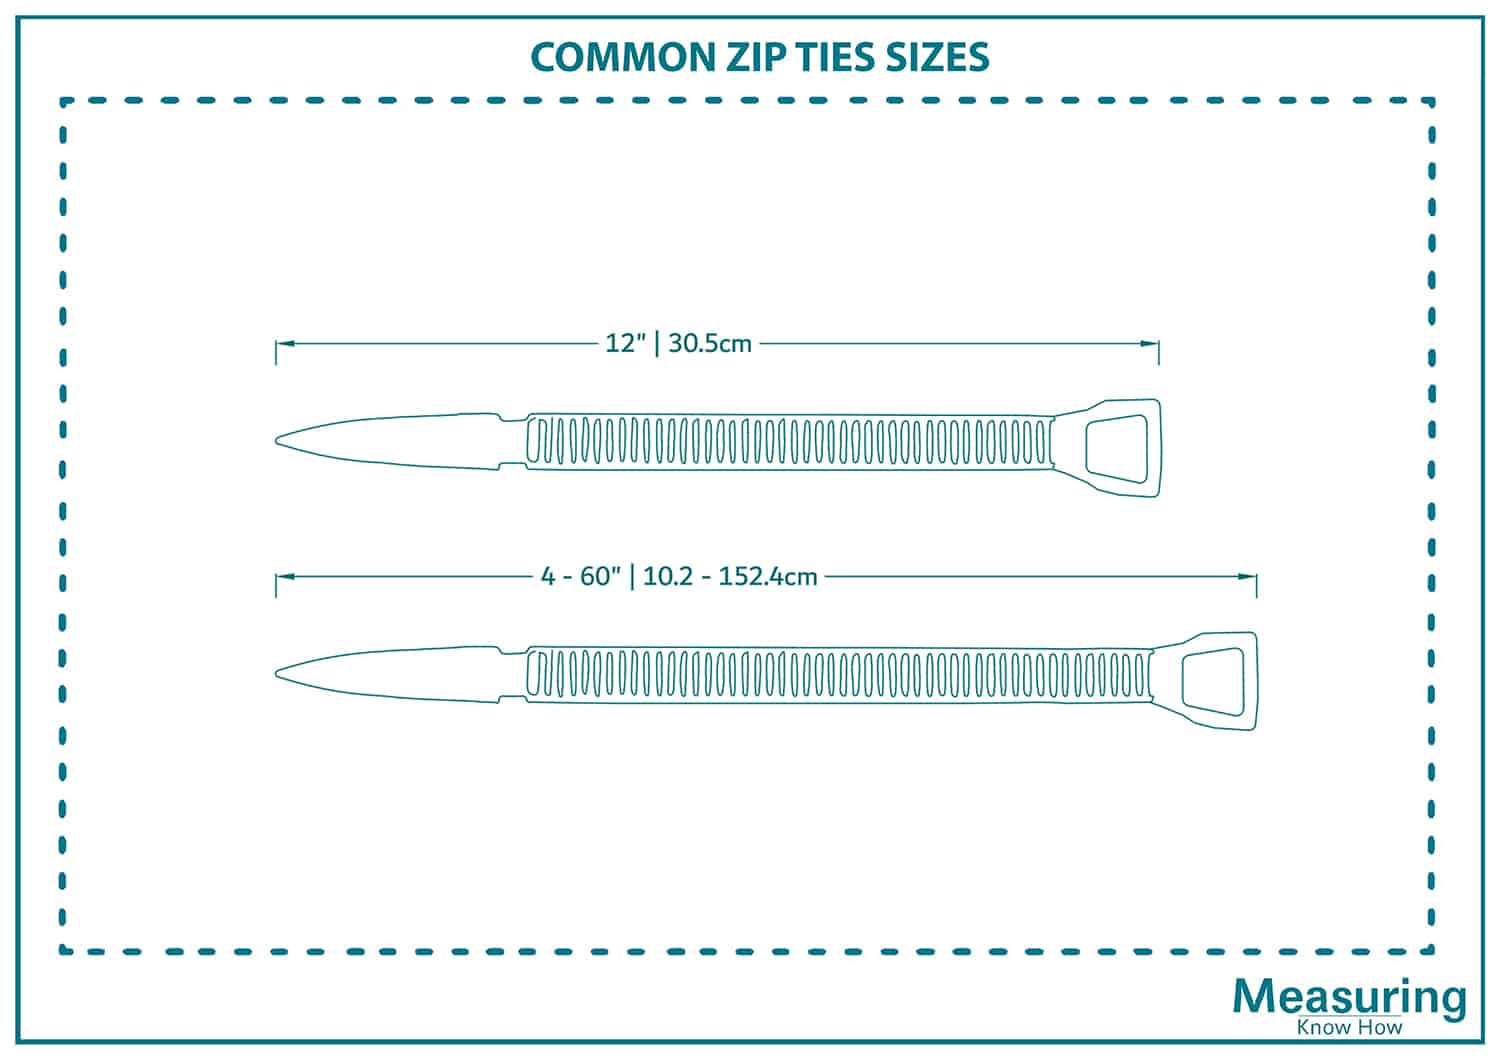 Common zip ties sizes